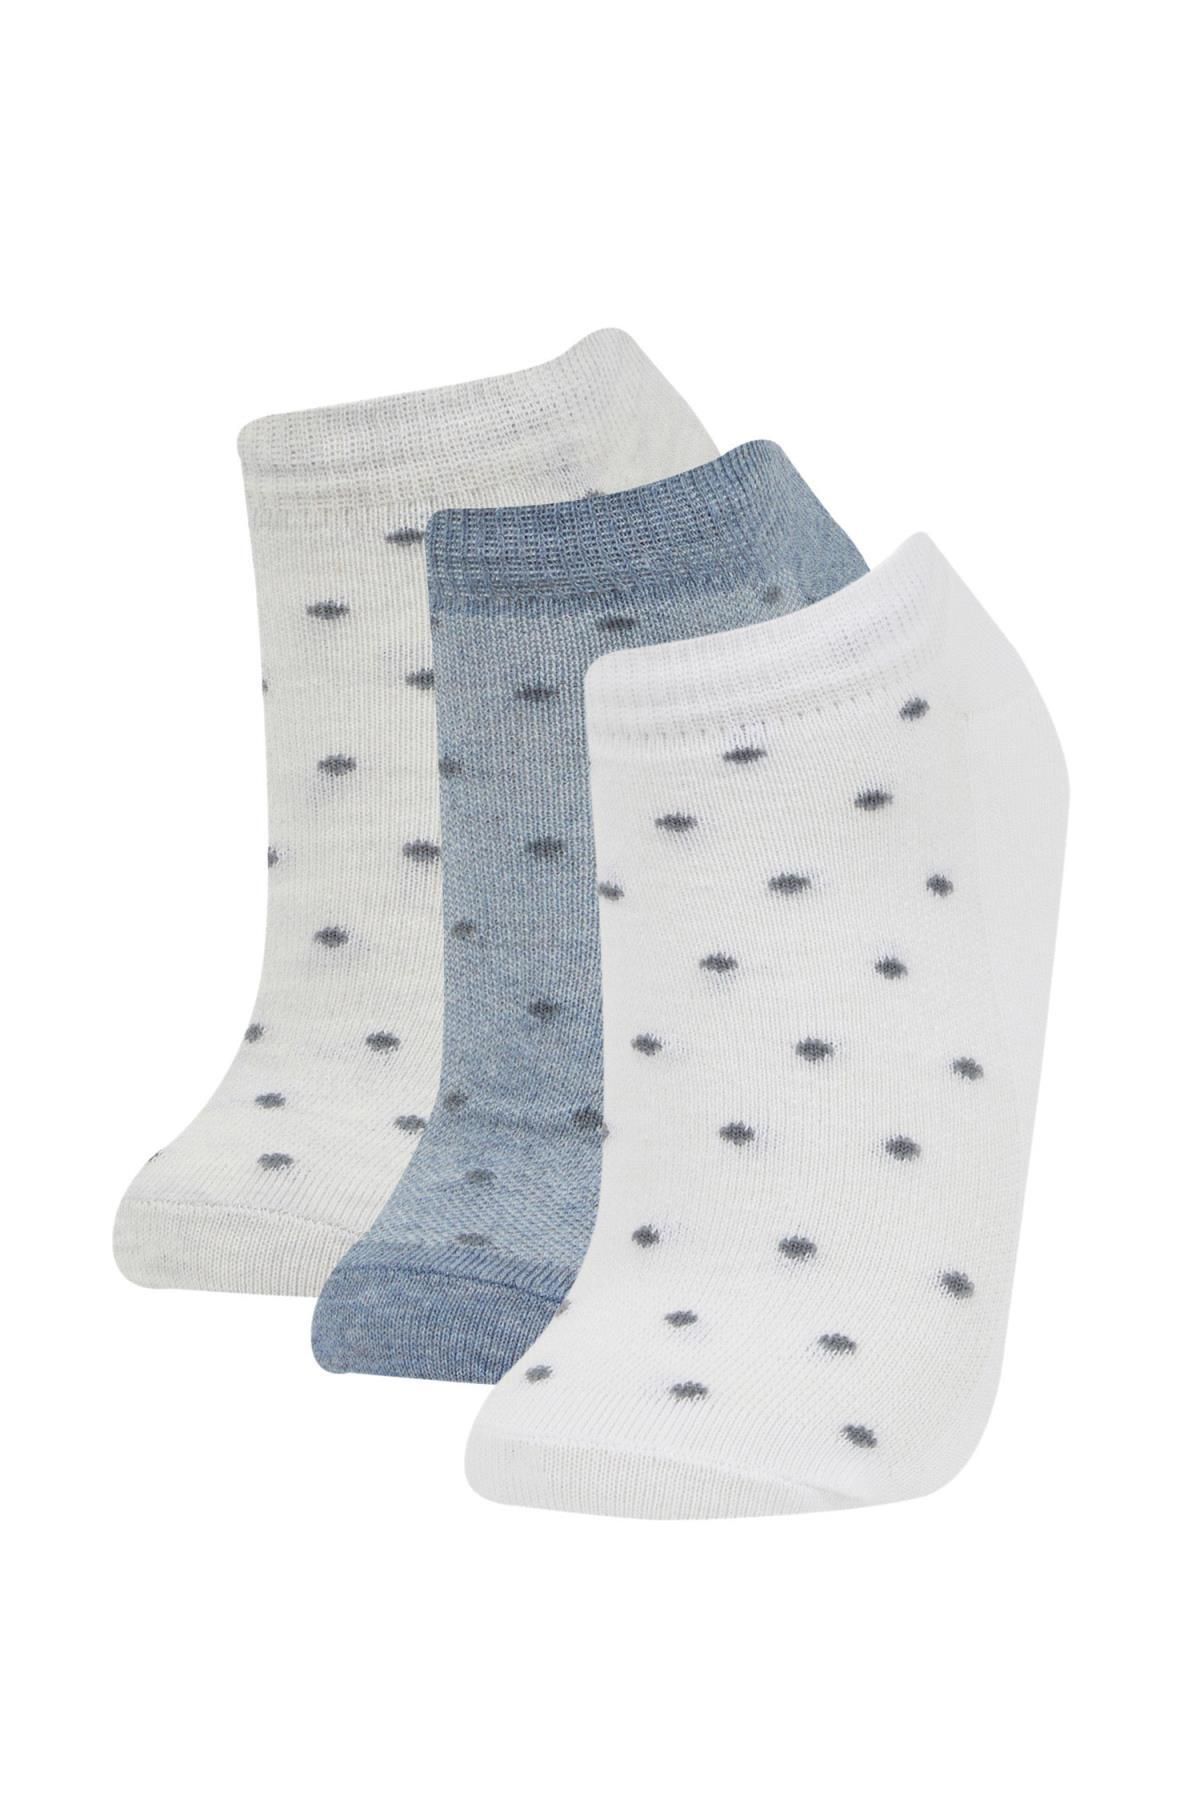 Defacto Kadın 3lü Pamuklu Patik Çorap B6037AXNS